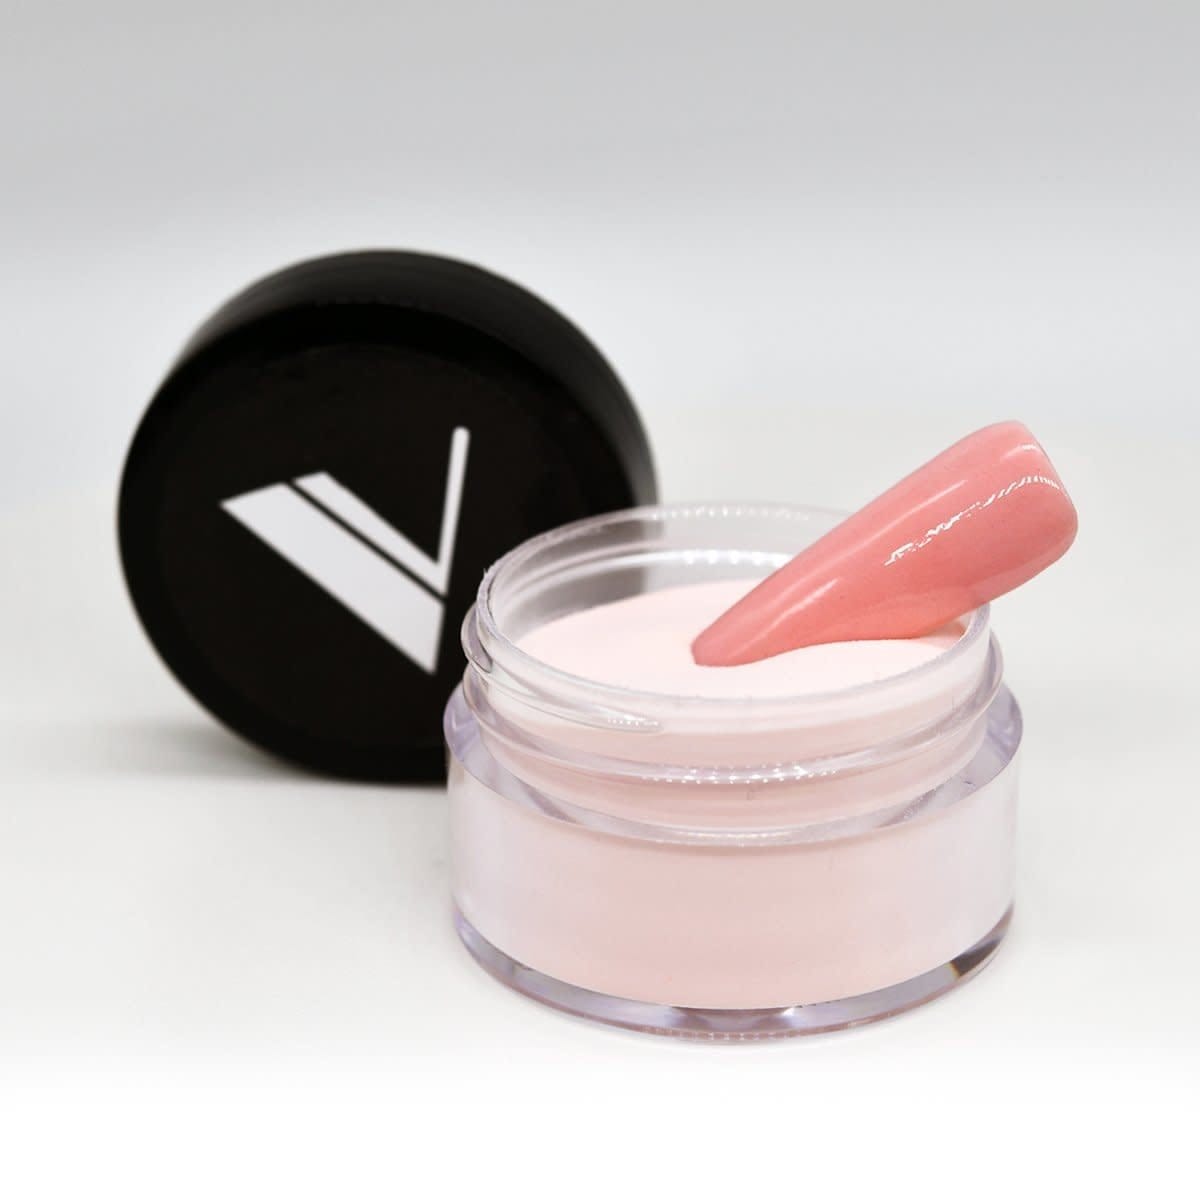 Valentino Beauty Pure - Coloured Acrylic Powder 0.5 oz - 105 Nerine - Jessica Nail & Beauty Supply - Canada Nail Beauty Supply - Acrylic Powder